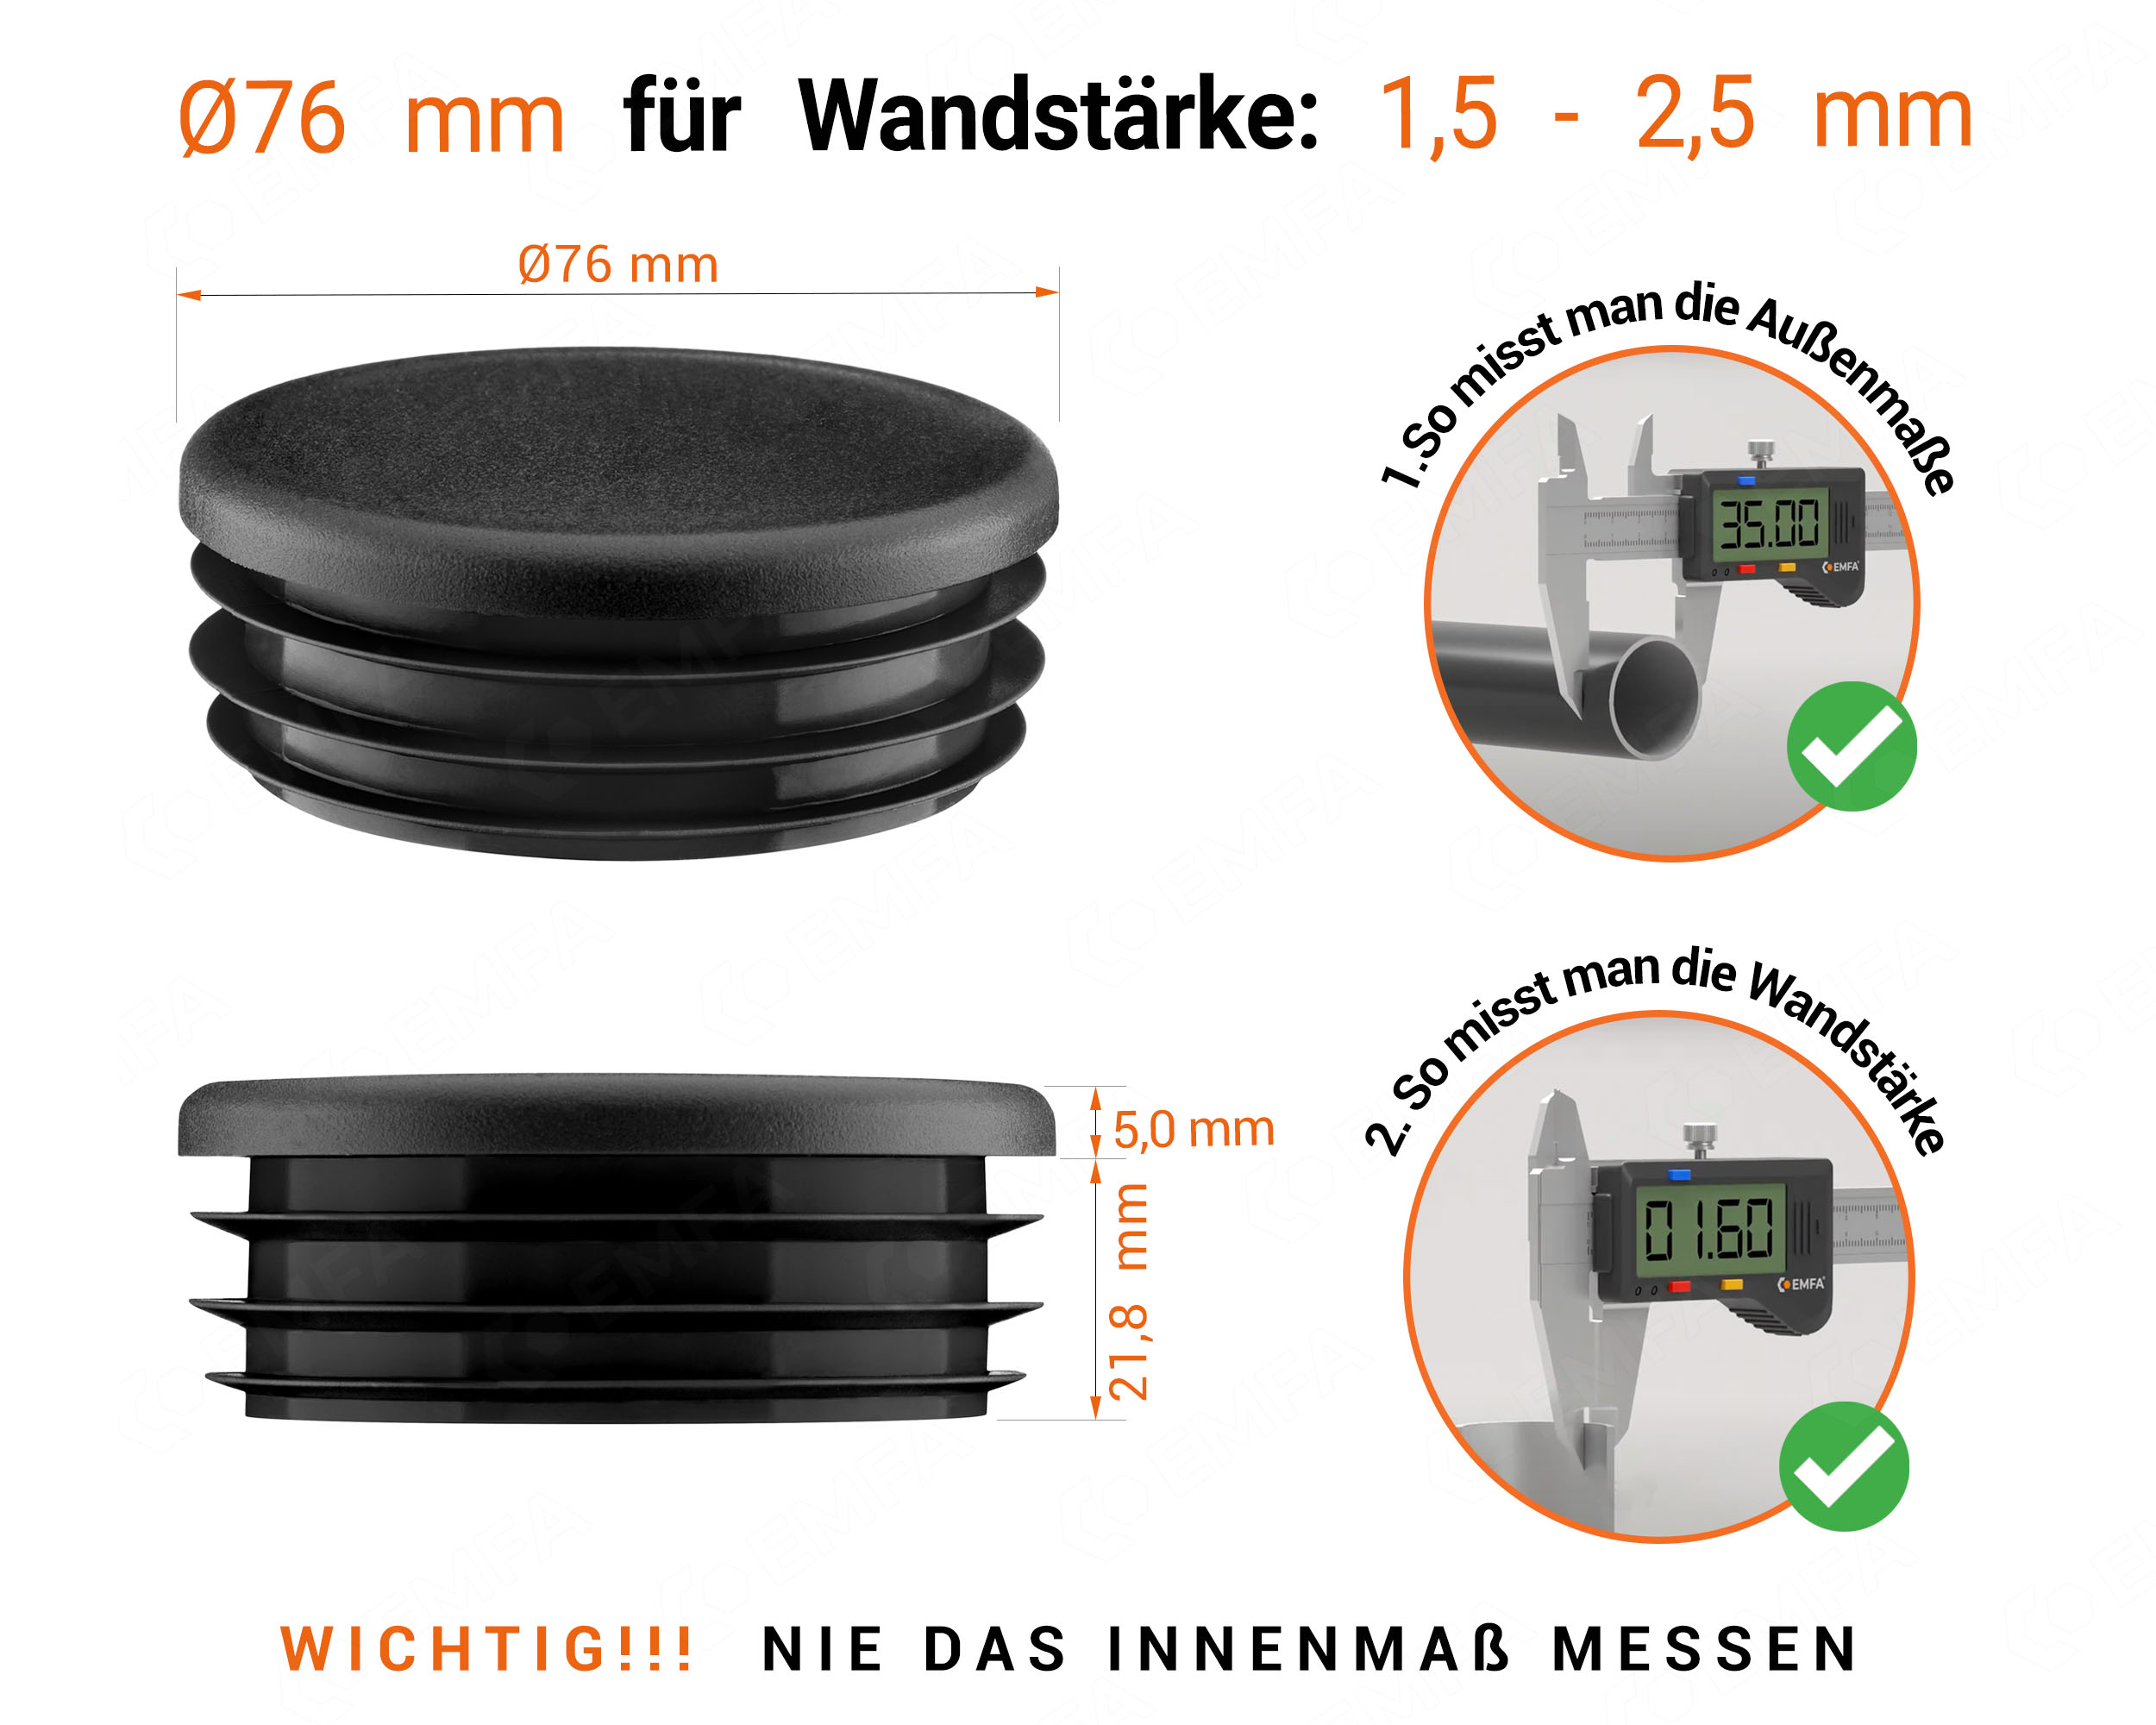 Schwarze Endkappe für Rundrohre in der Größe 76 mm mit technischen Abmessungen und Anleitung für korrekte Messung